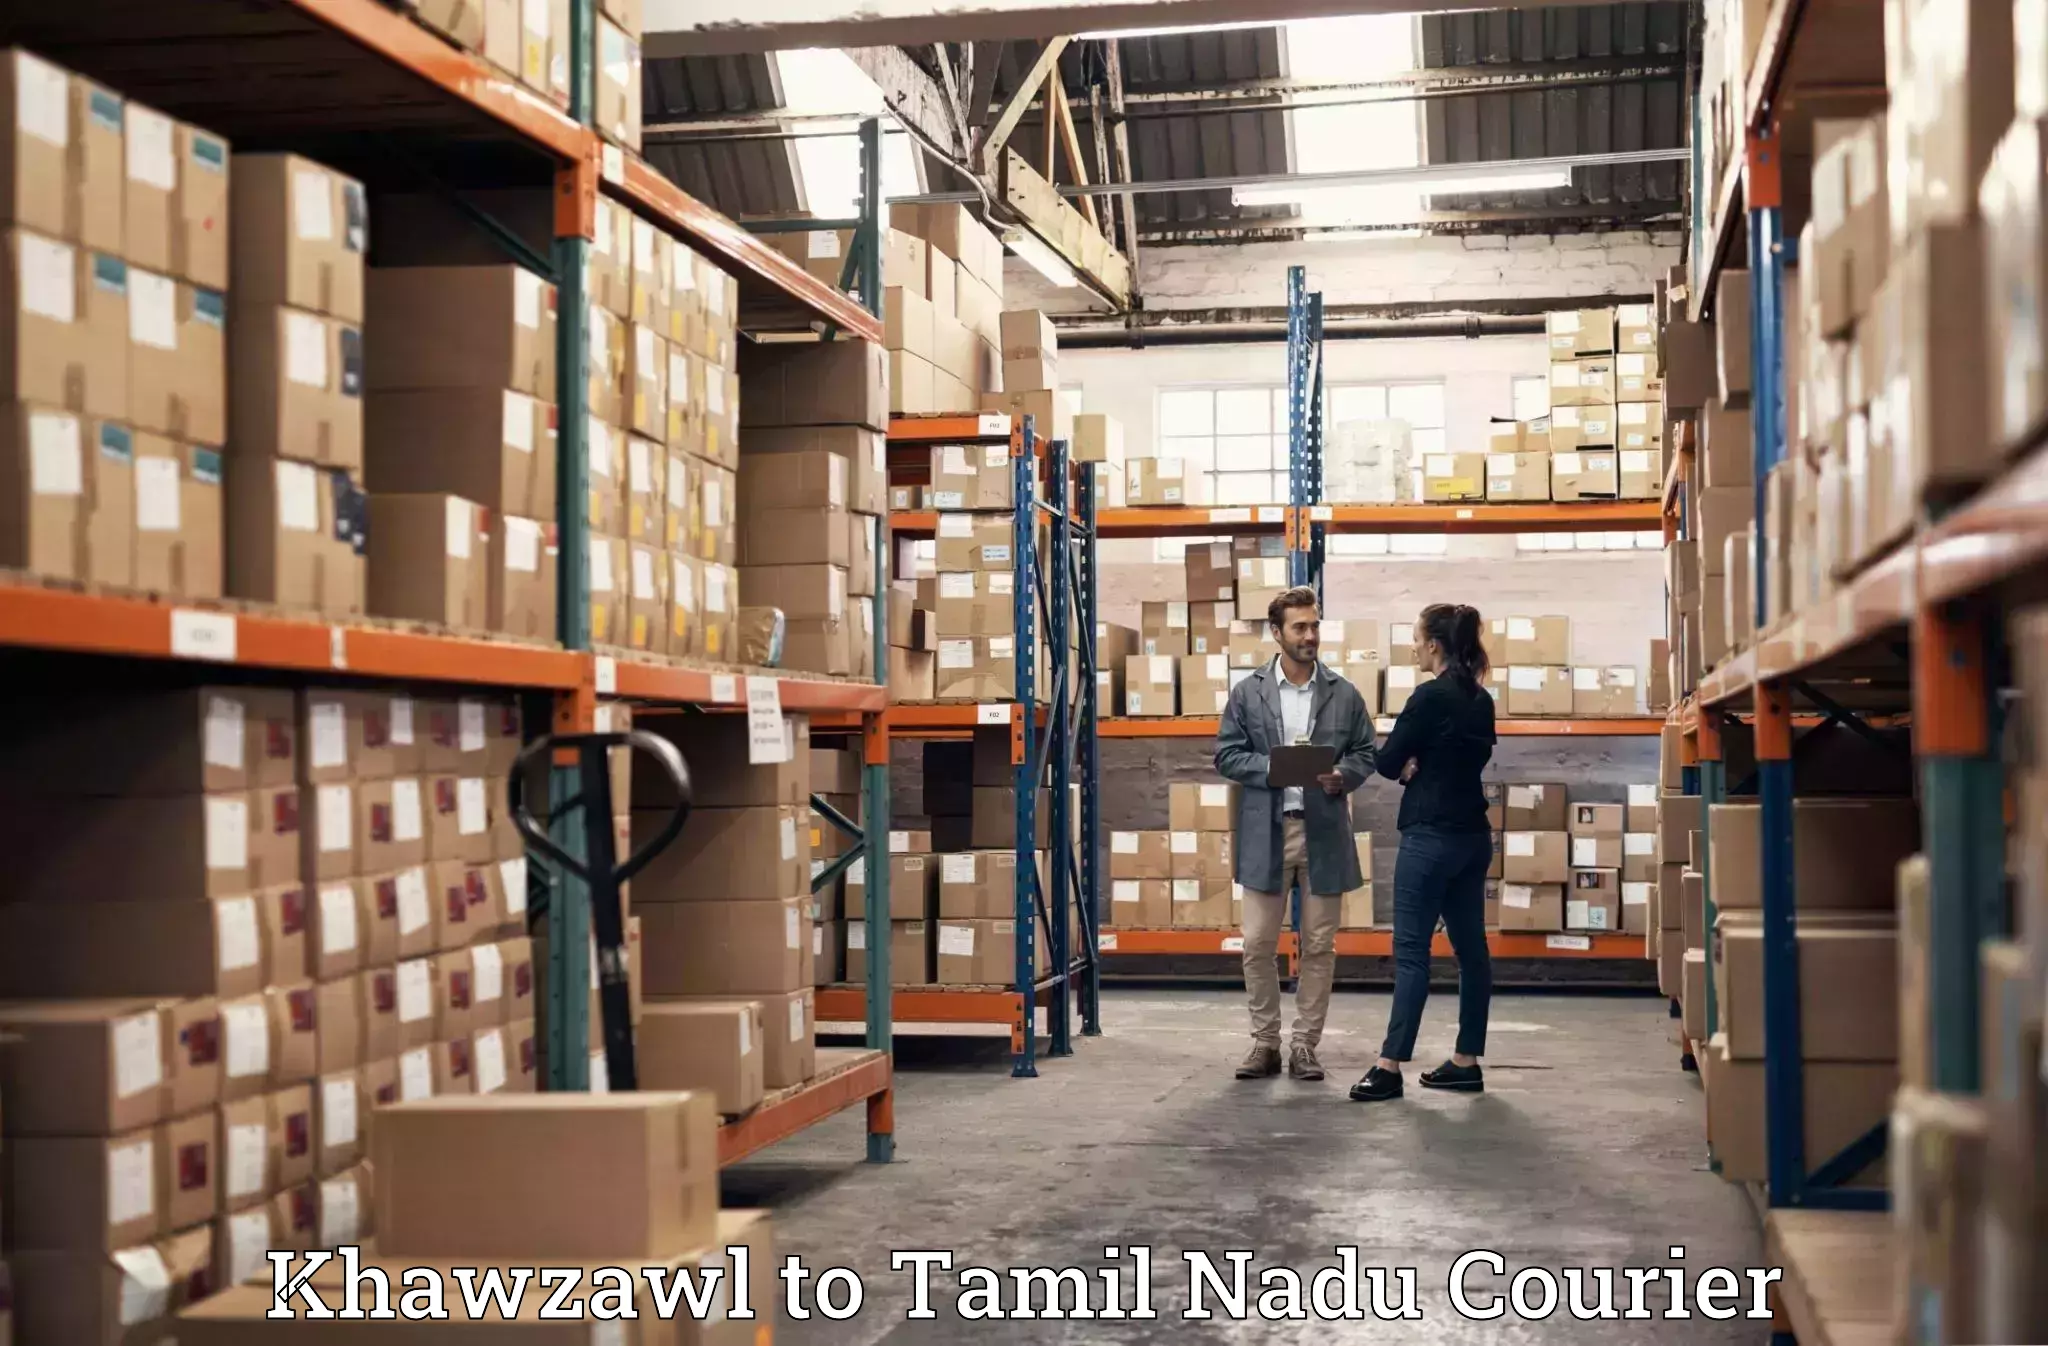 Household goods transport service Khawzawl to Palacode